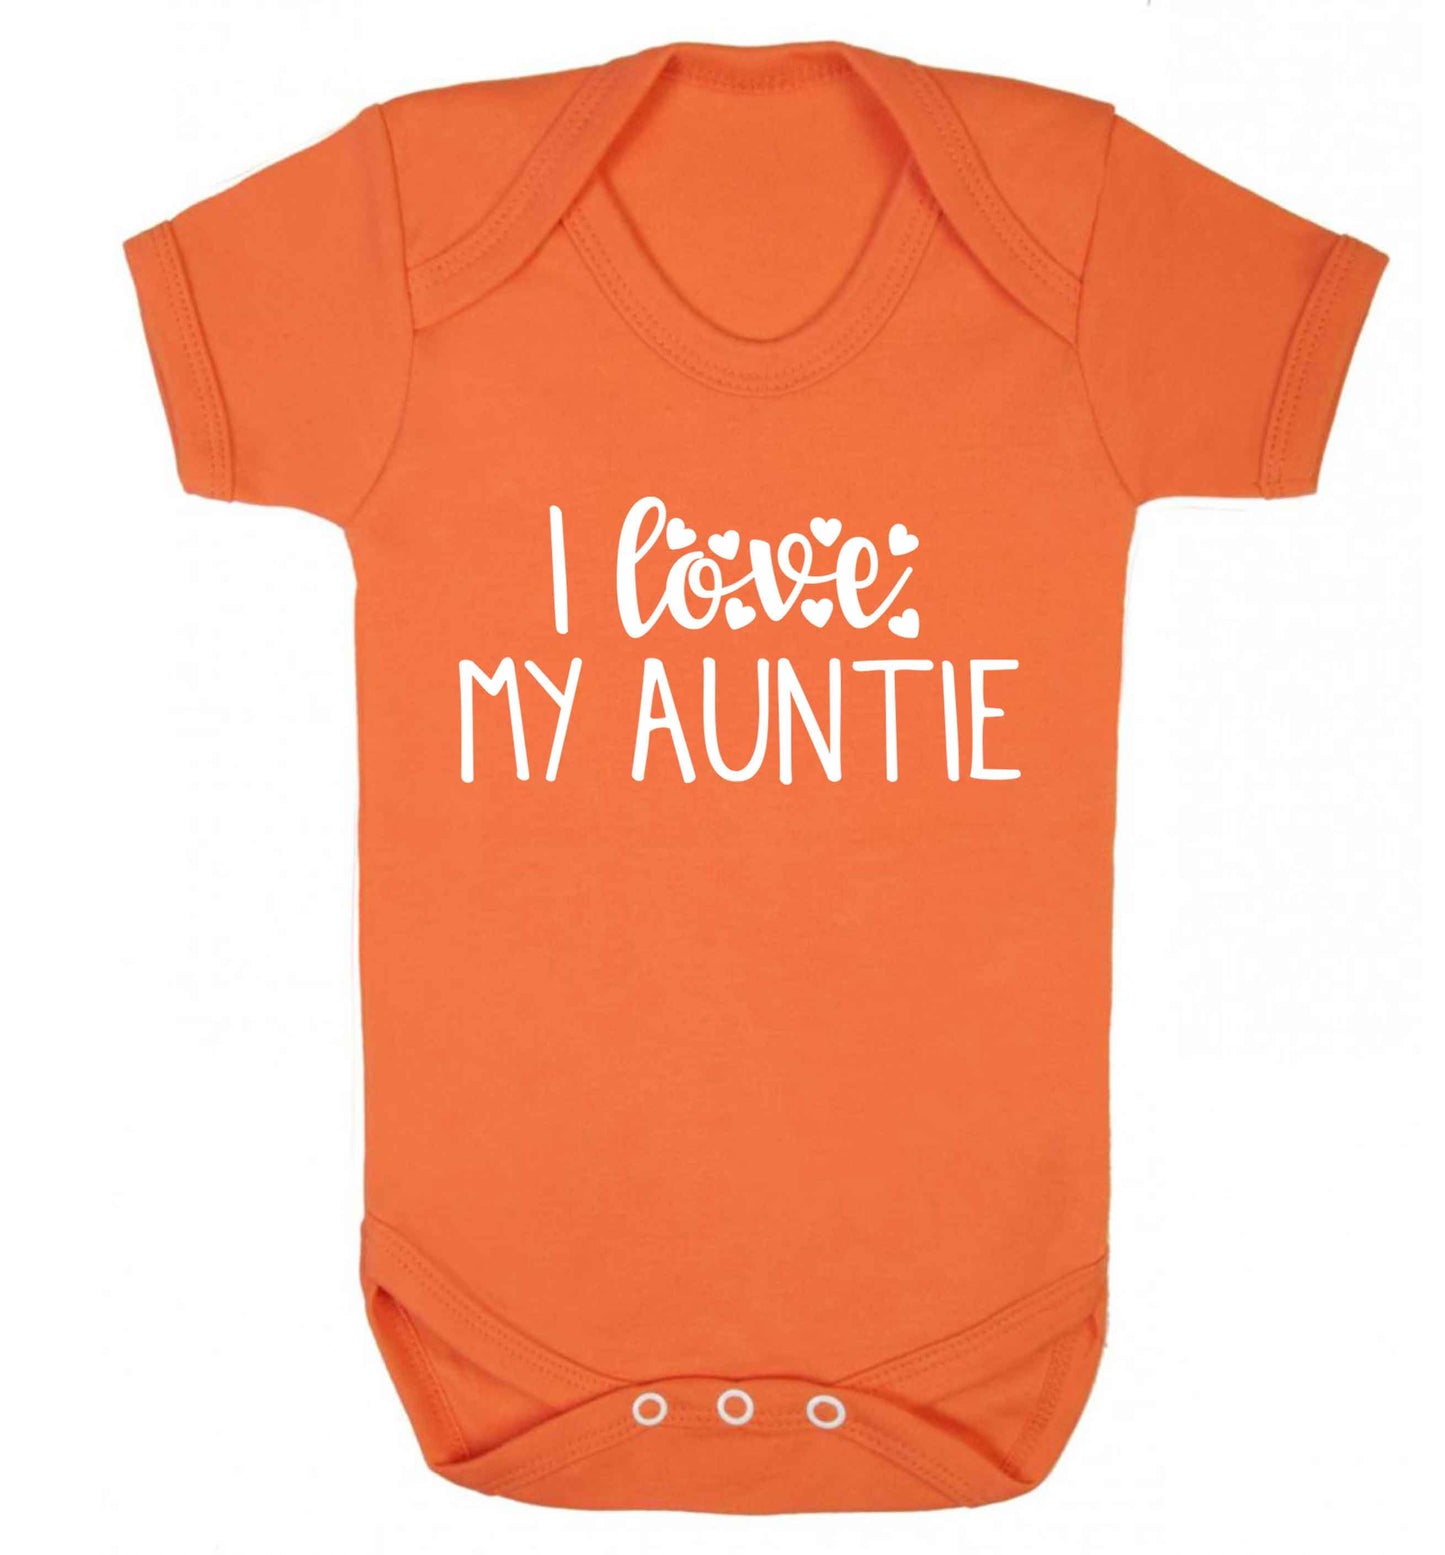 I love my auntie Baby Vest orange 18-24 months